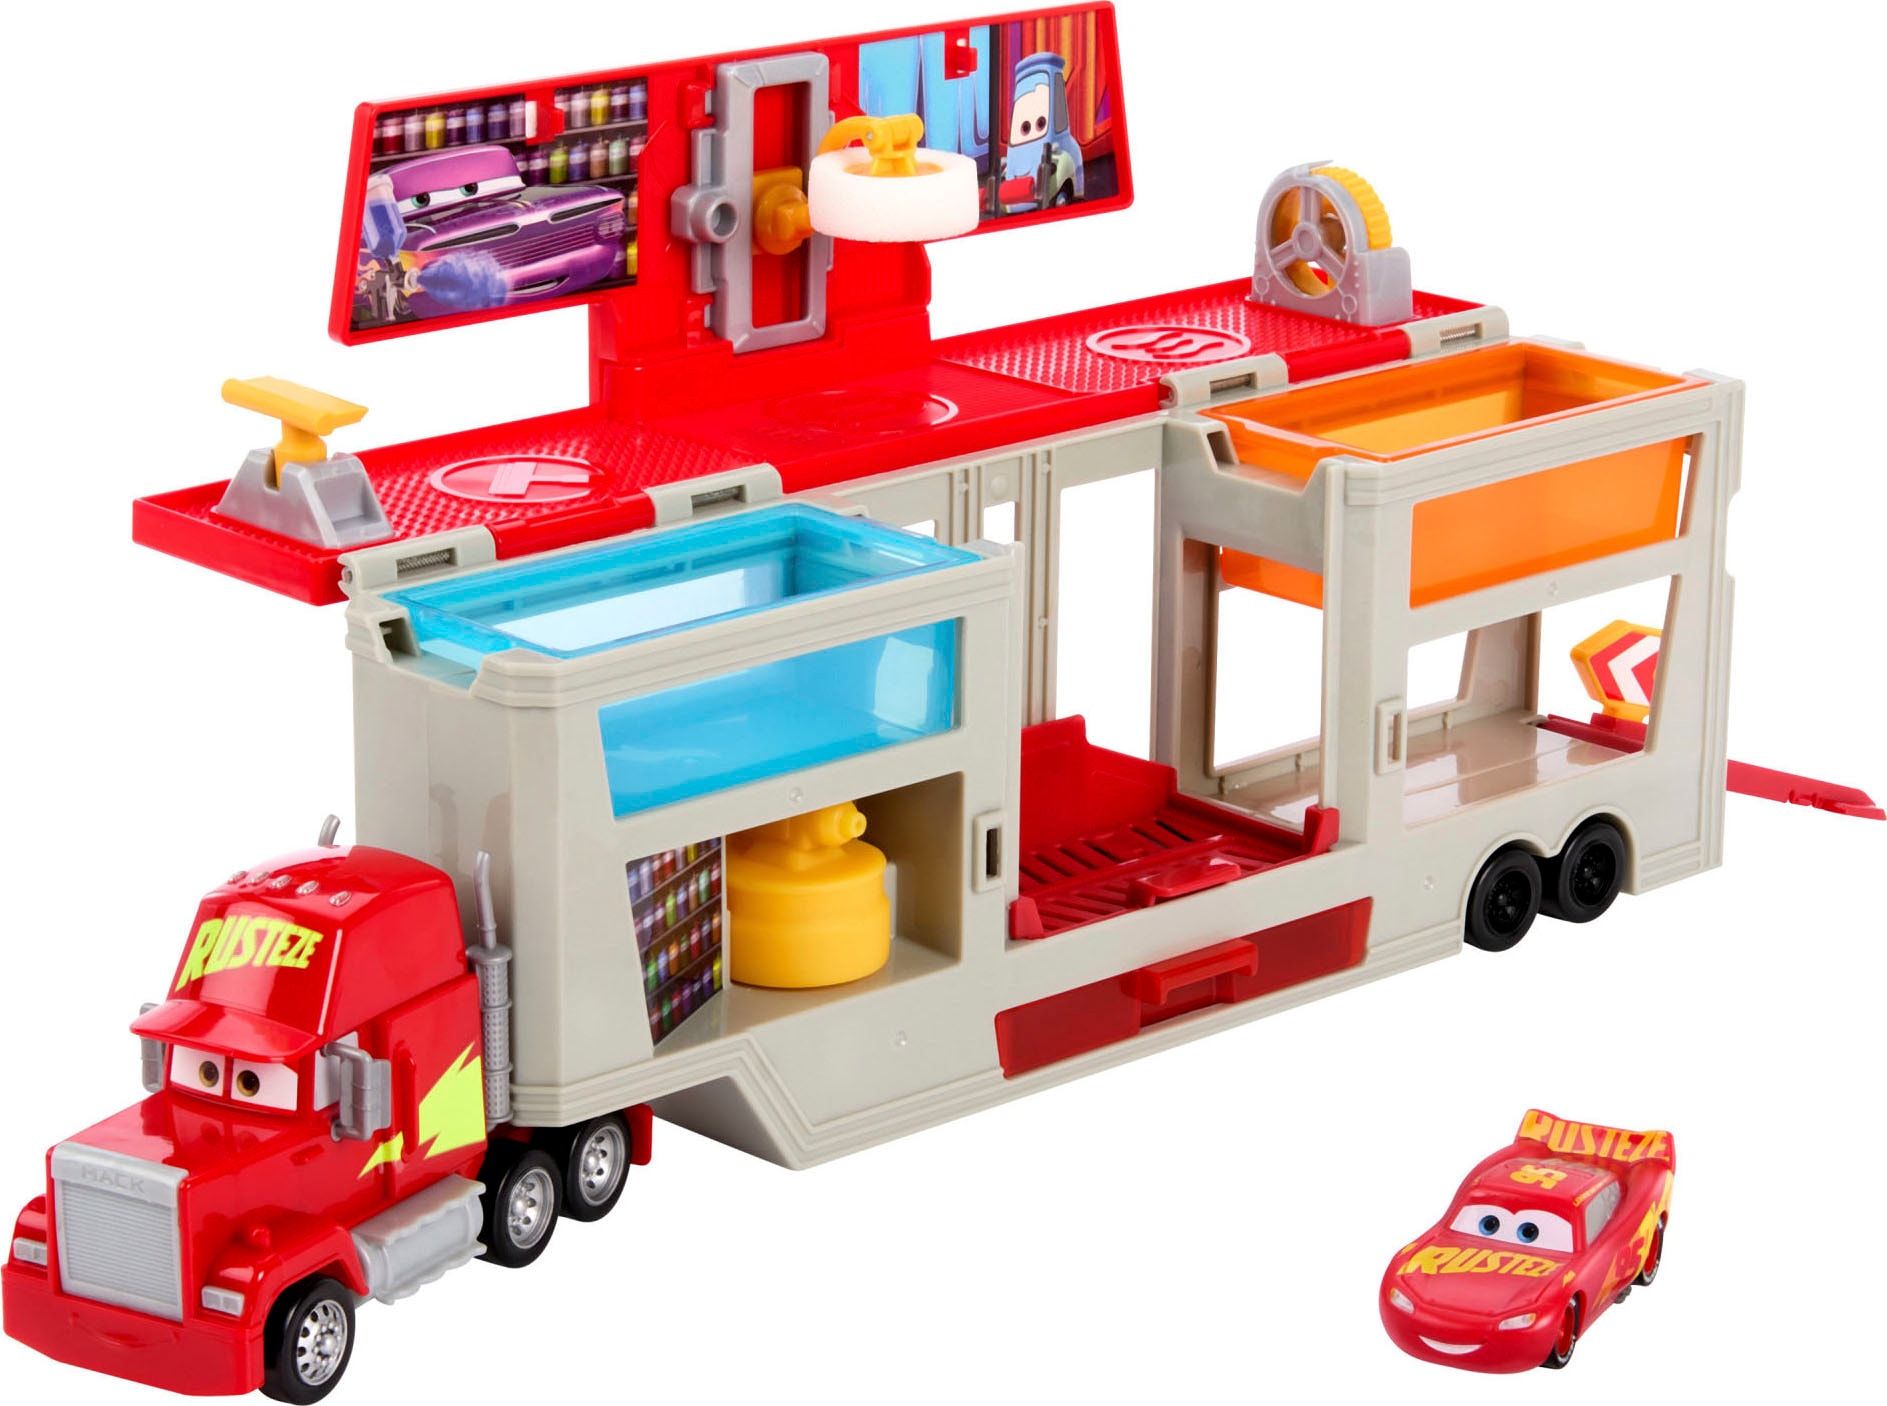 Spielzeug-LKW »Disney und Pixar Cars, Lackiererei Mack mit 1 Spielzeugauto«